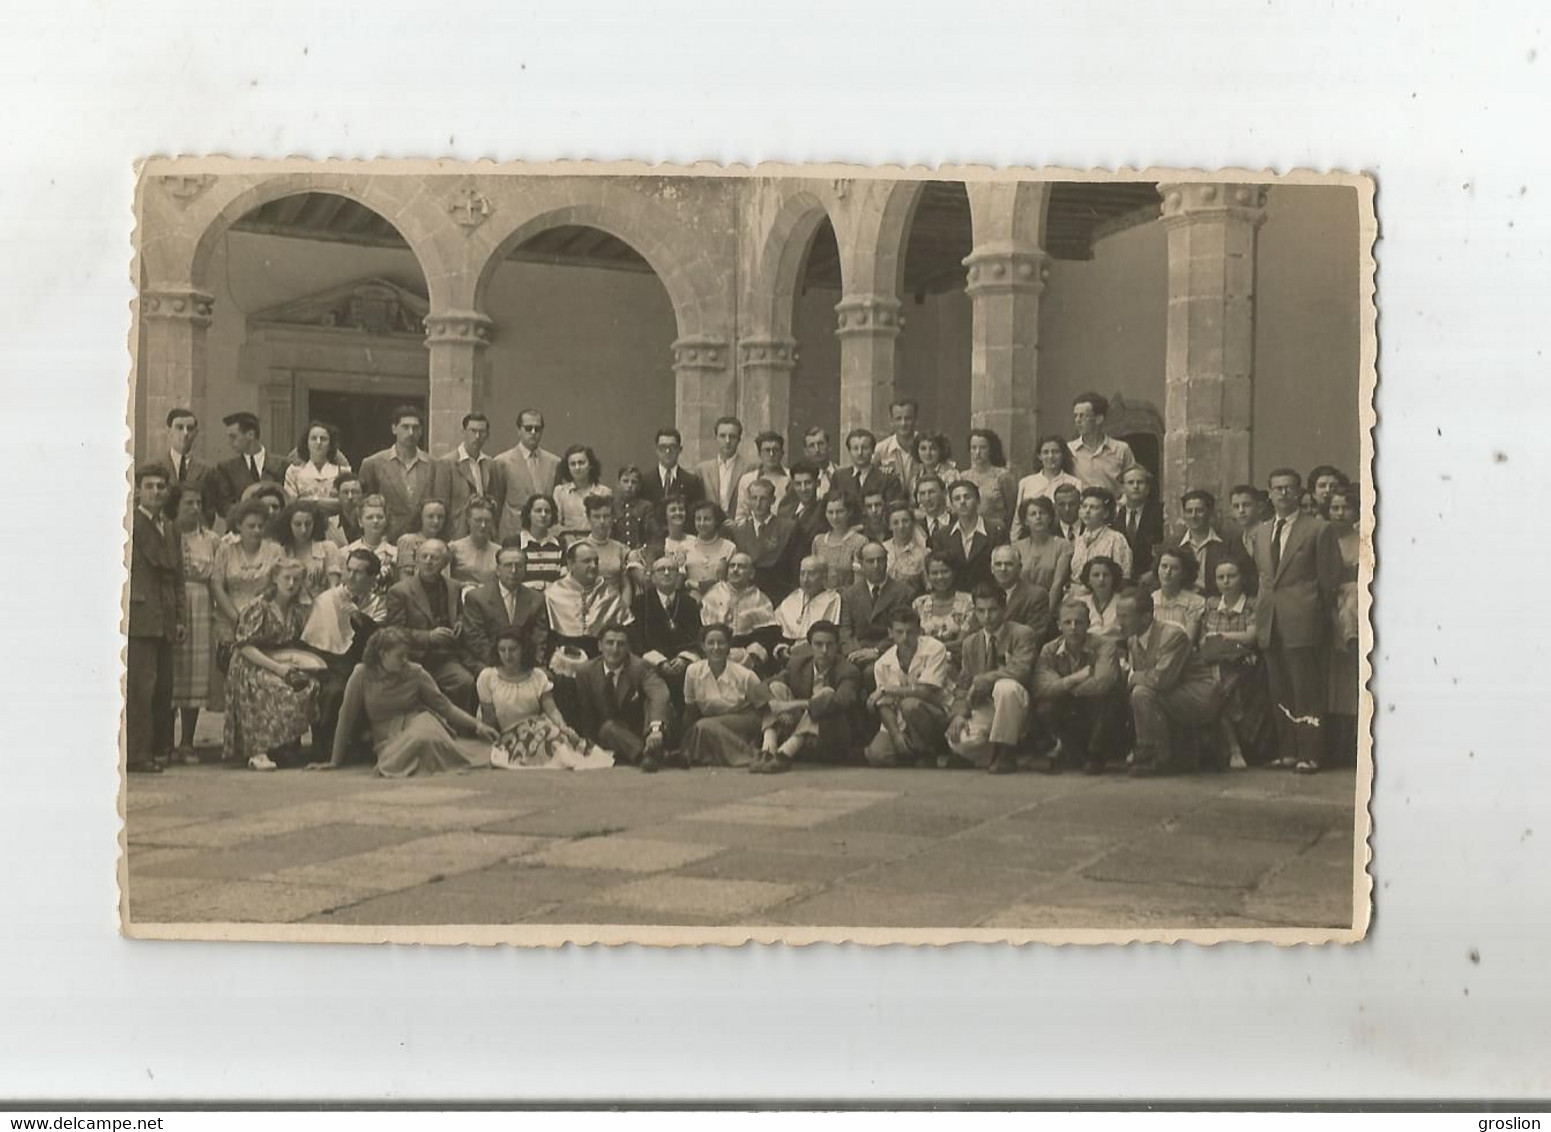 VALLADOLID COLEGIO MAYOR PHOTO GROUPE D'ETUDIANTS ETRANGERS DANS LE PATIO CENTRAL 1949 - Valladolid